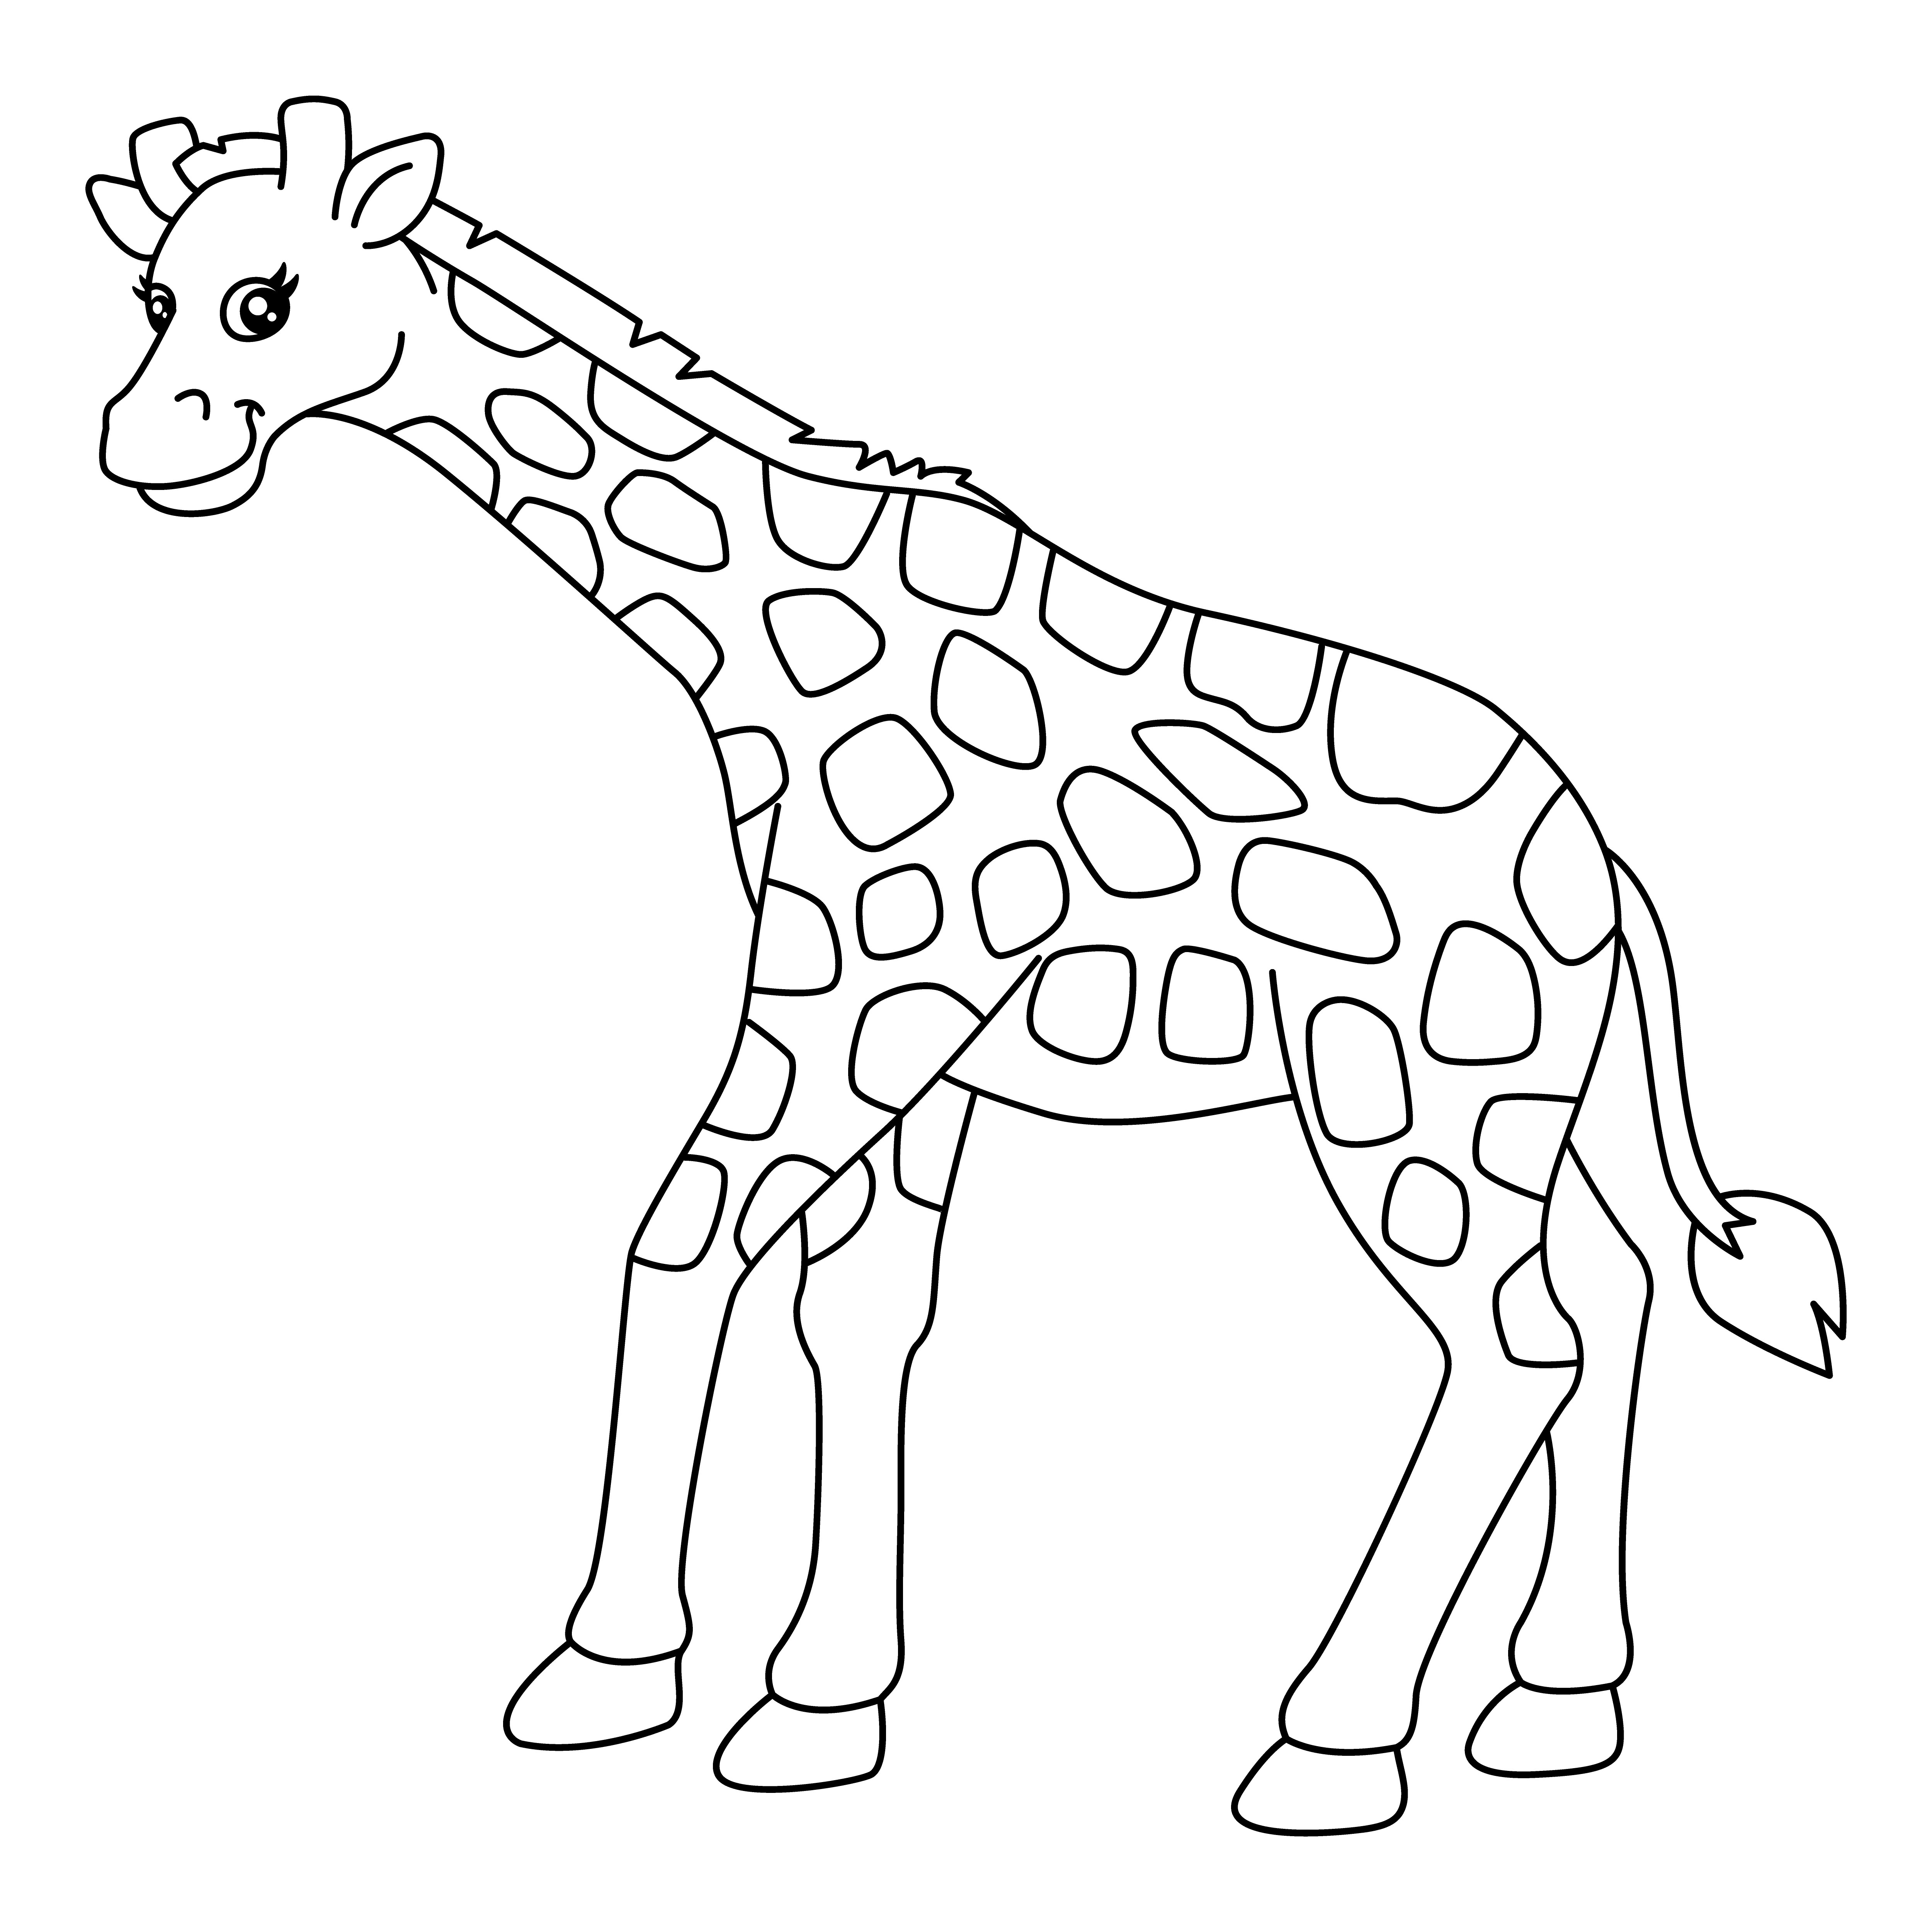 Раскраска милый забавный жираф наклонил голову формата А4 в высоком качестве